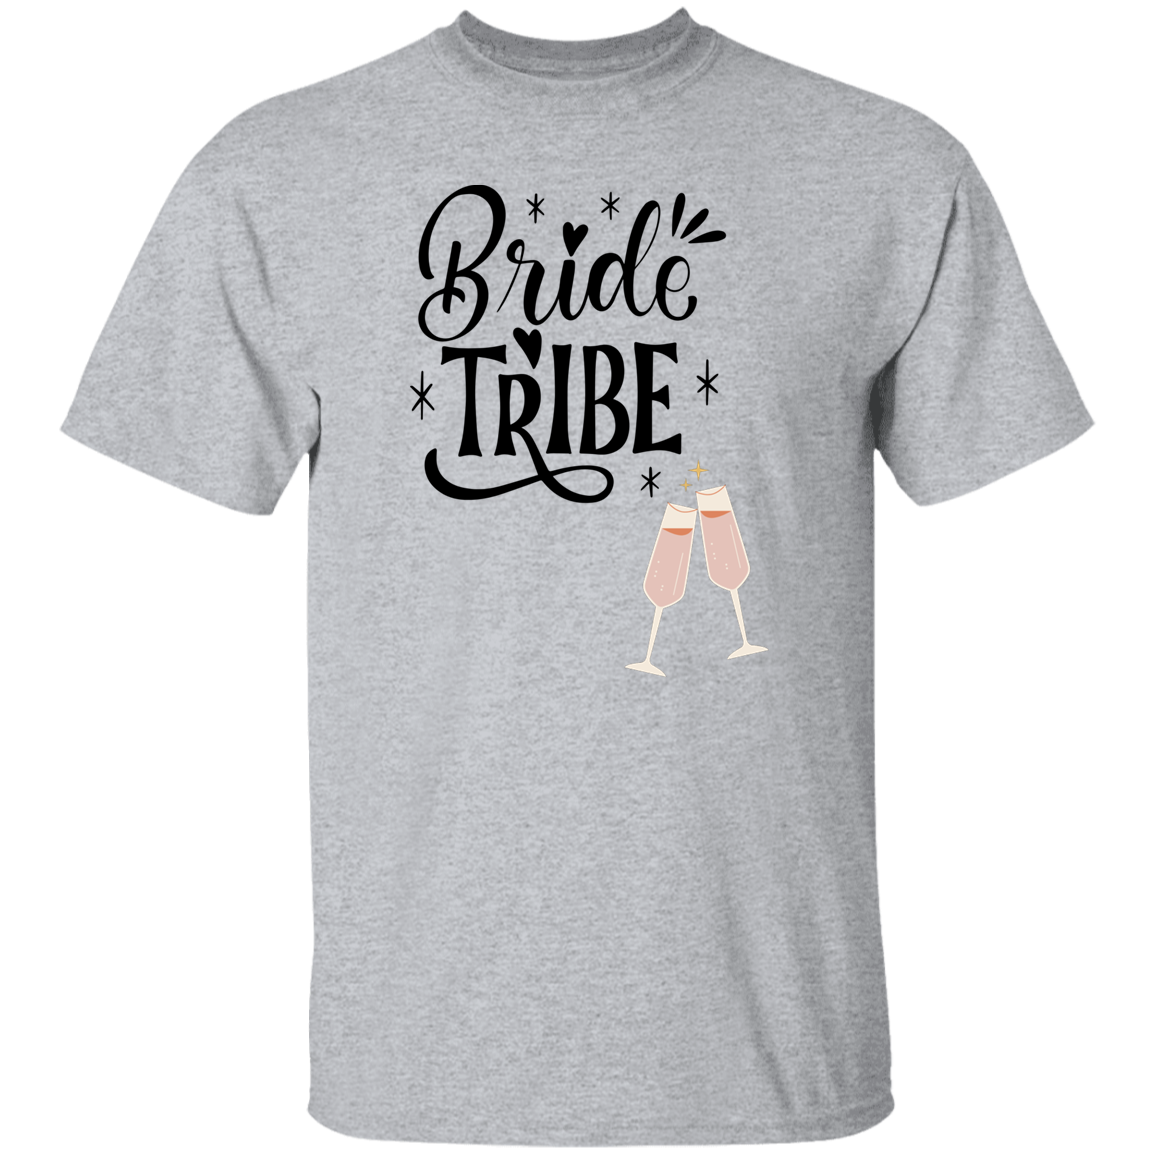 Bride Tribe  T-Shirt, Bridesmaid's Gift